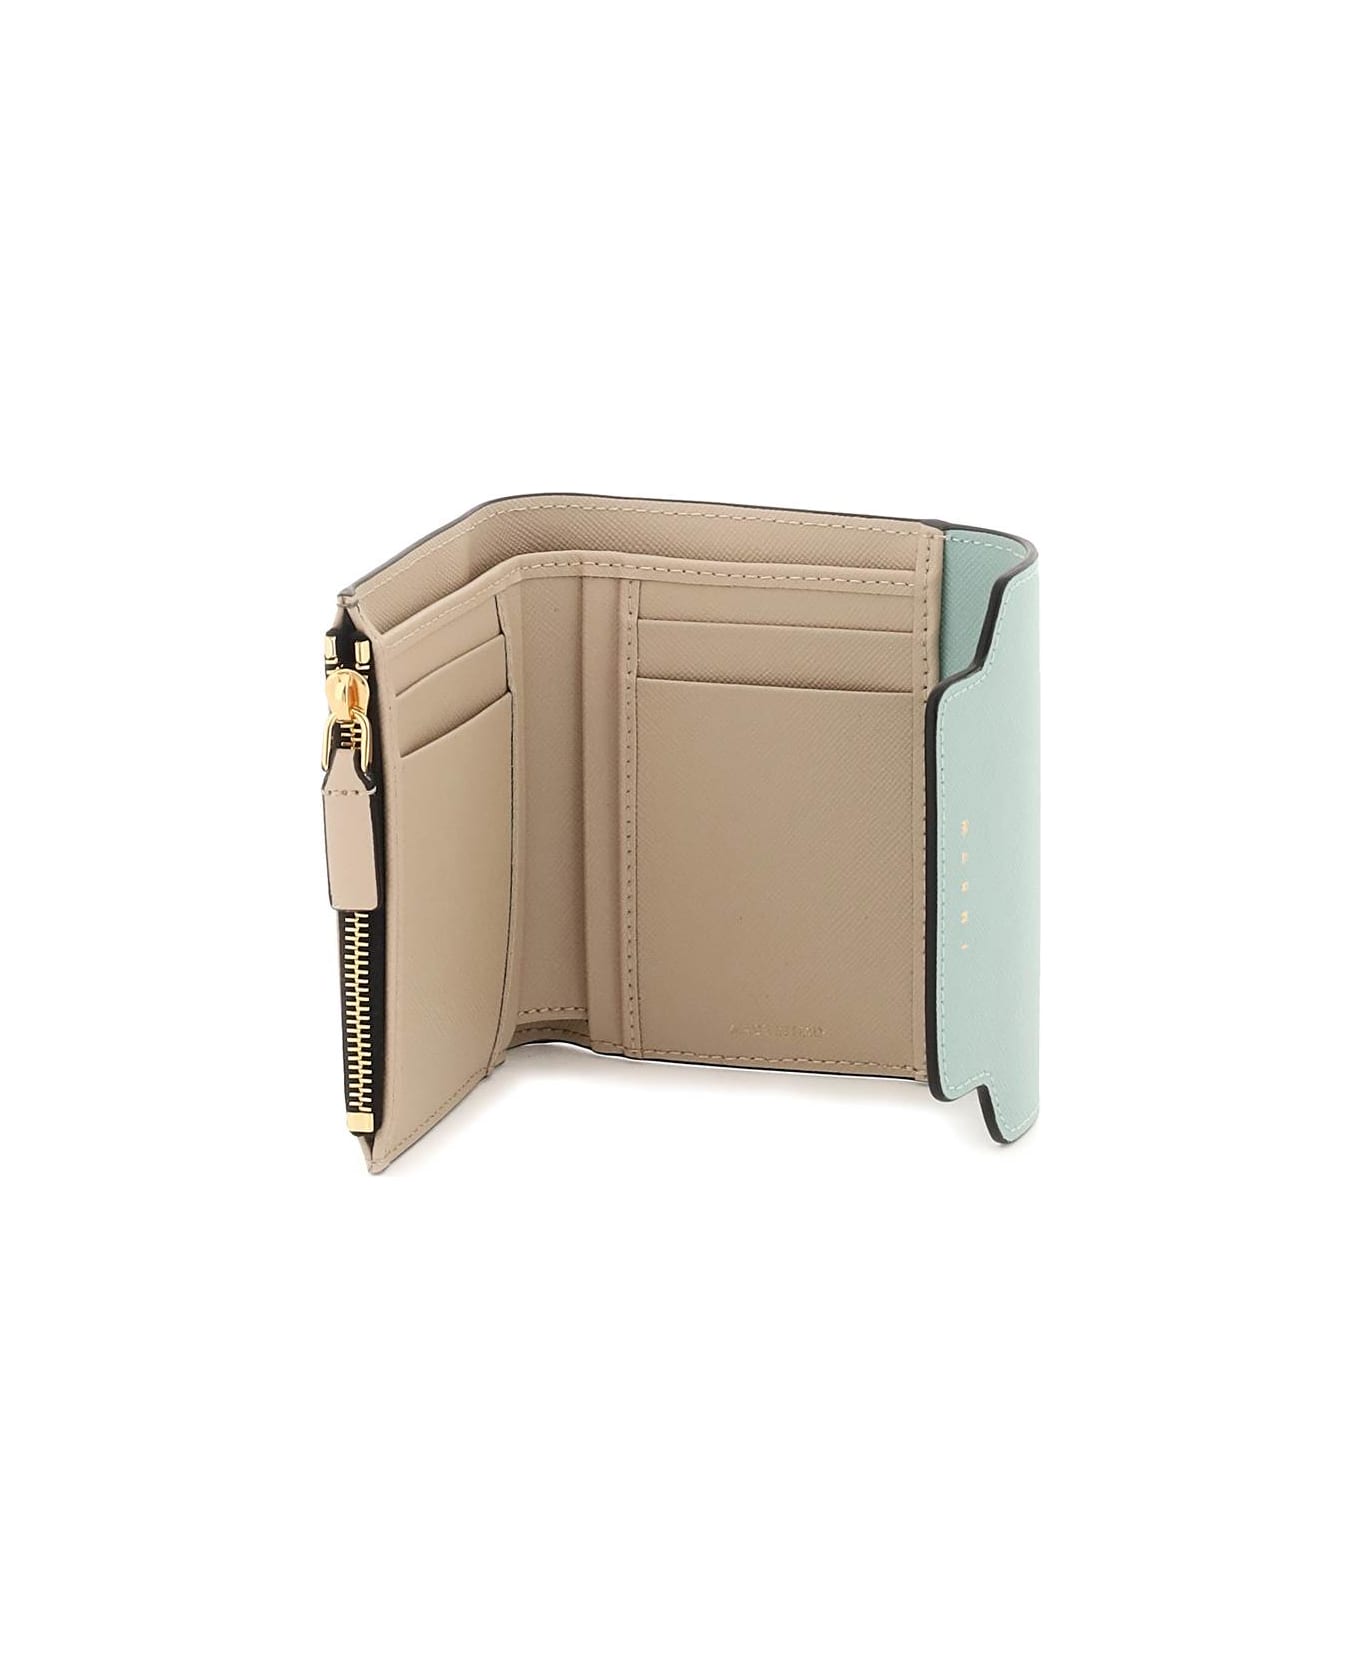 Marni Bi-fold Wallet With Flap - TEA GREEN LIMESTONE LCAMEL (Beige)